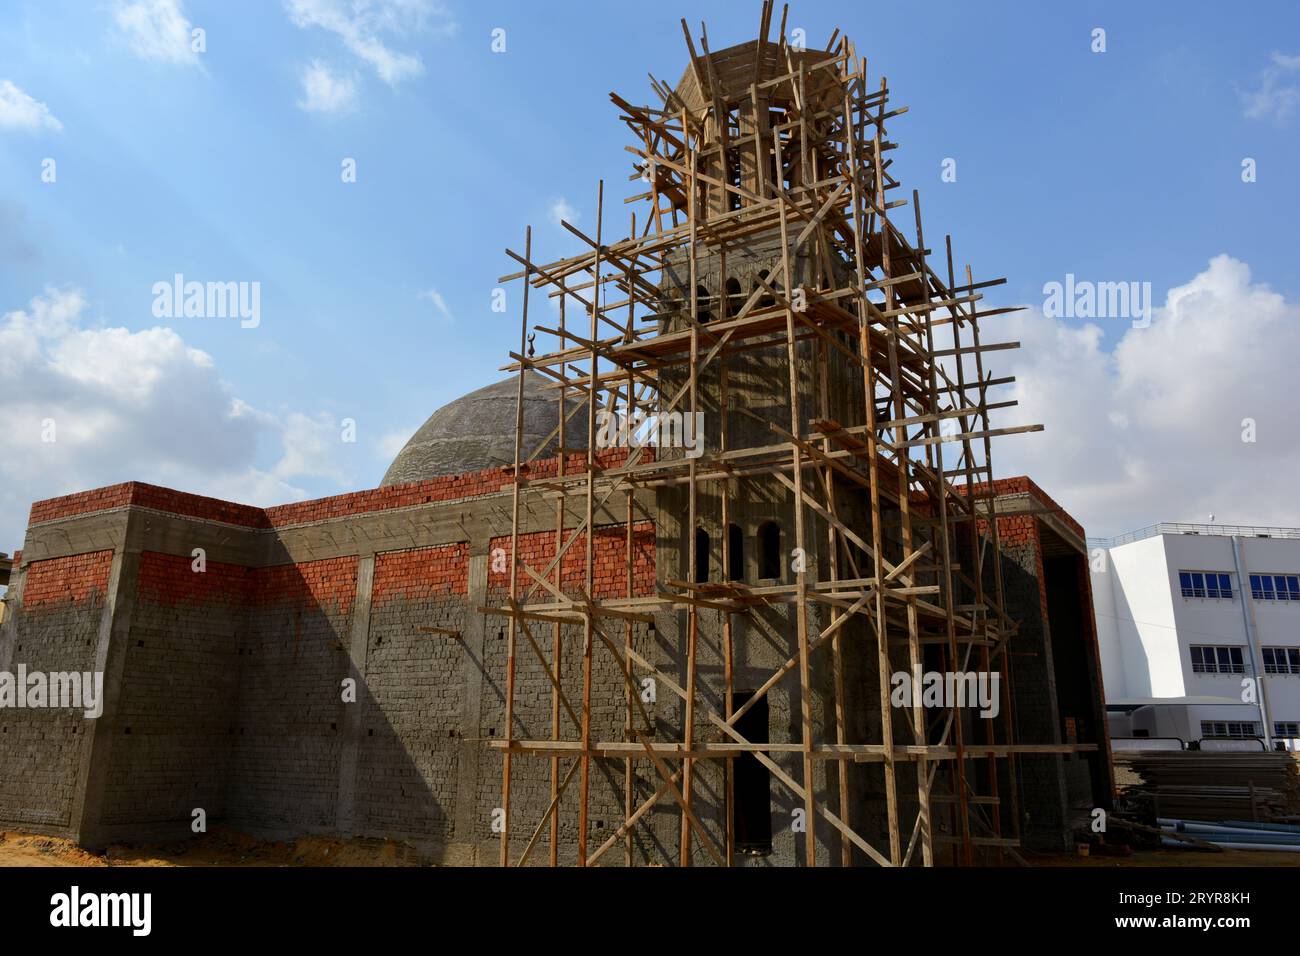 Une nouvelle mosquée en construction, la construction d'une nouvelle grande mosquée Masjid au Caire, en Egypte, avec un grand dôme et un minaret haut, échafaudages en bois, mosquées sont p Banque D'Images